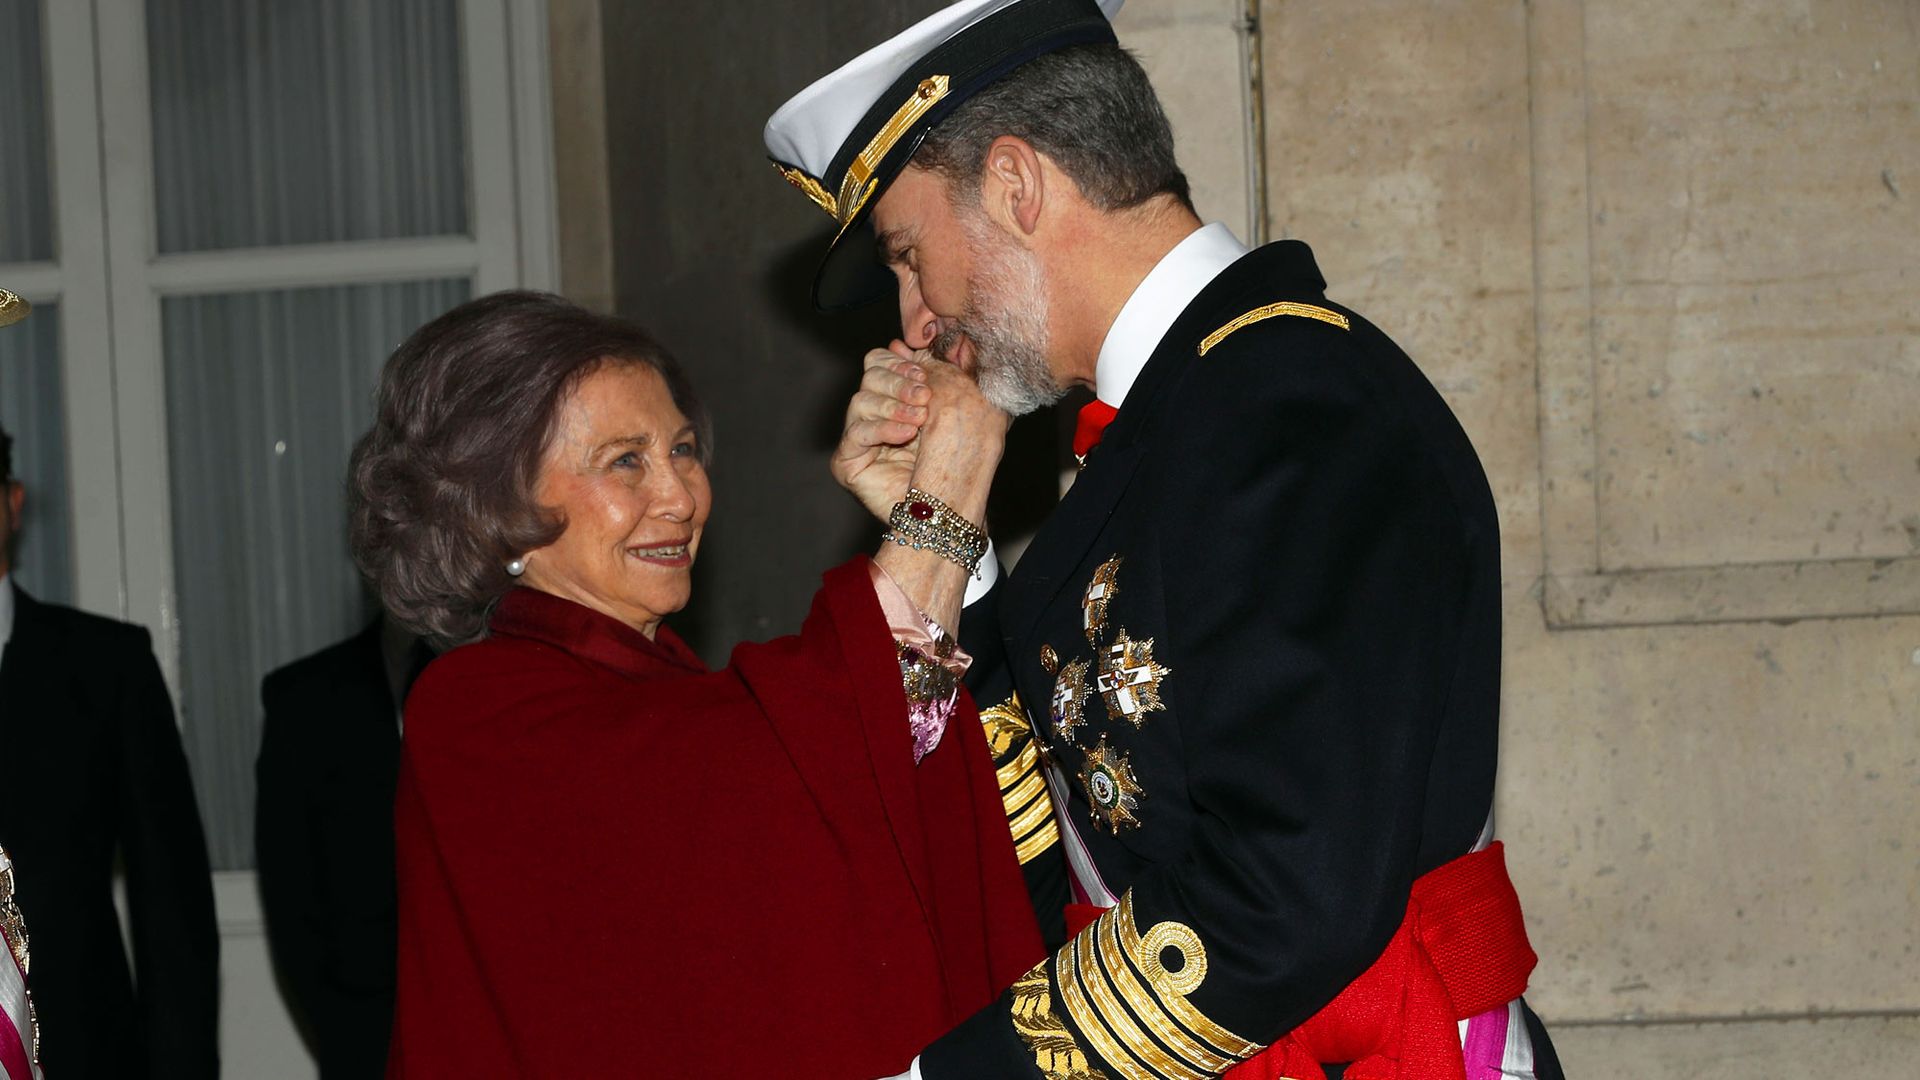 El rey Felipe VI besando la mano a su madre, la reina Sofía, durante la Pascua Militar celebrada en enero de 2018